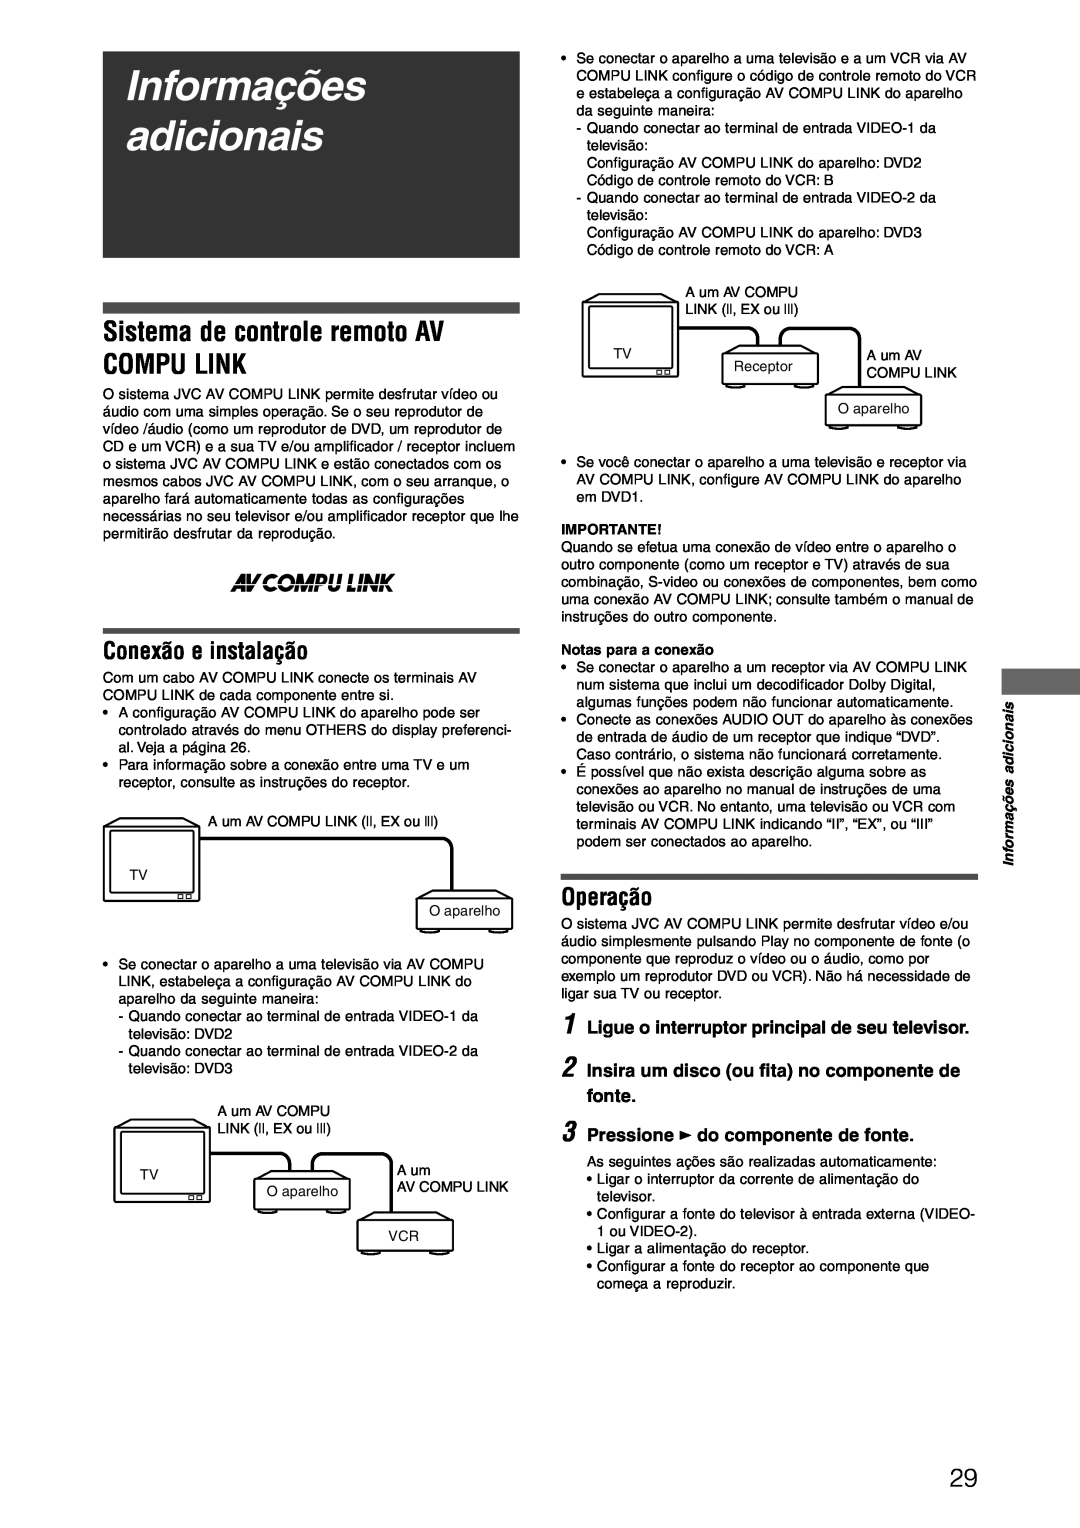 JVC XV-N312SUW manual Informações adicionais, Sistema de controle remoto AV COMPU LINK, Conexão e instalação, Operação 